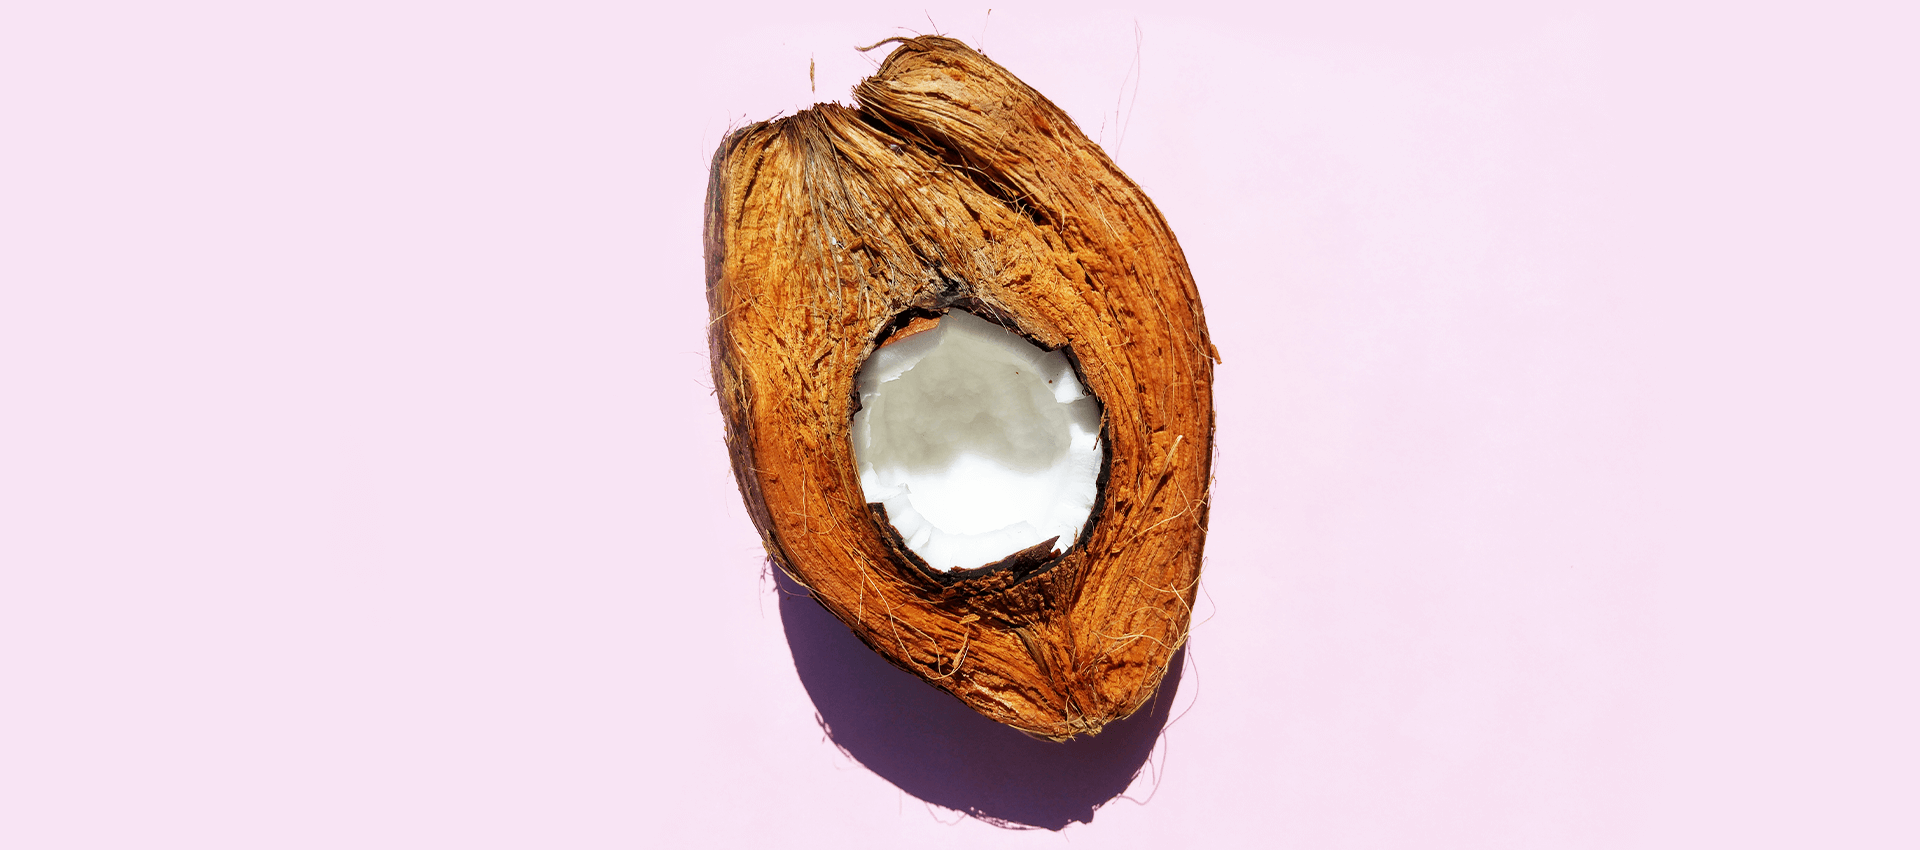 Is de kokosnoot een noot, een zaad of een vrucht?